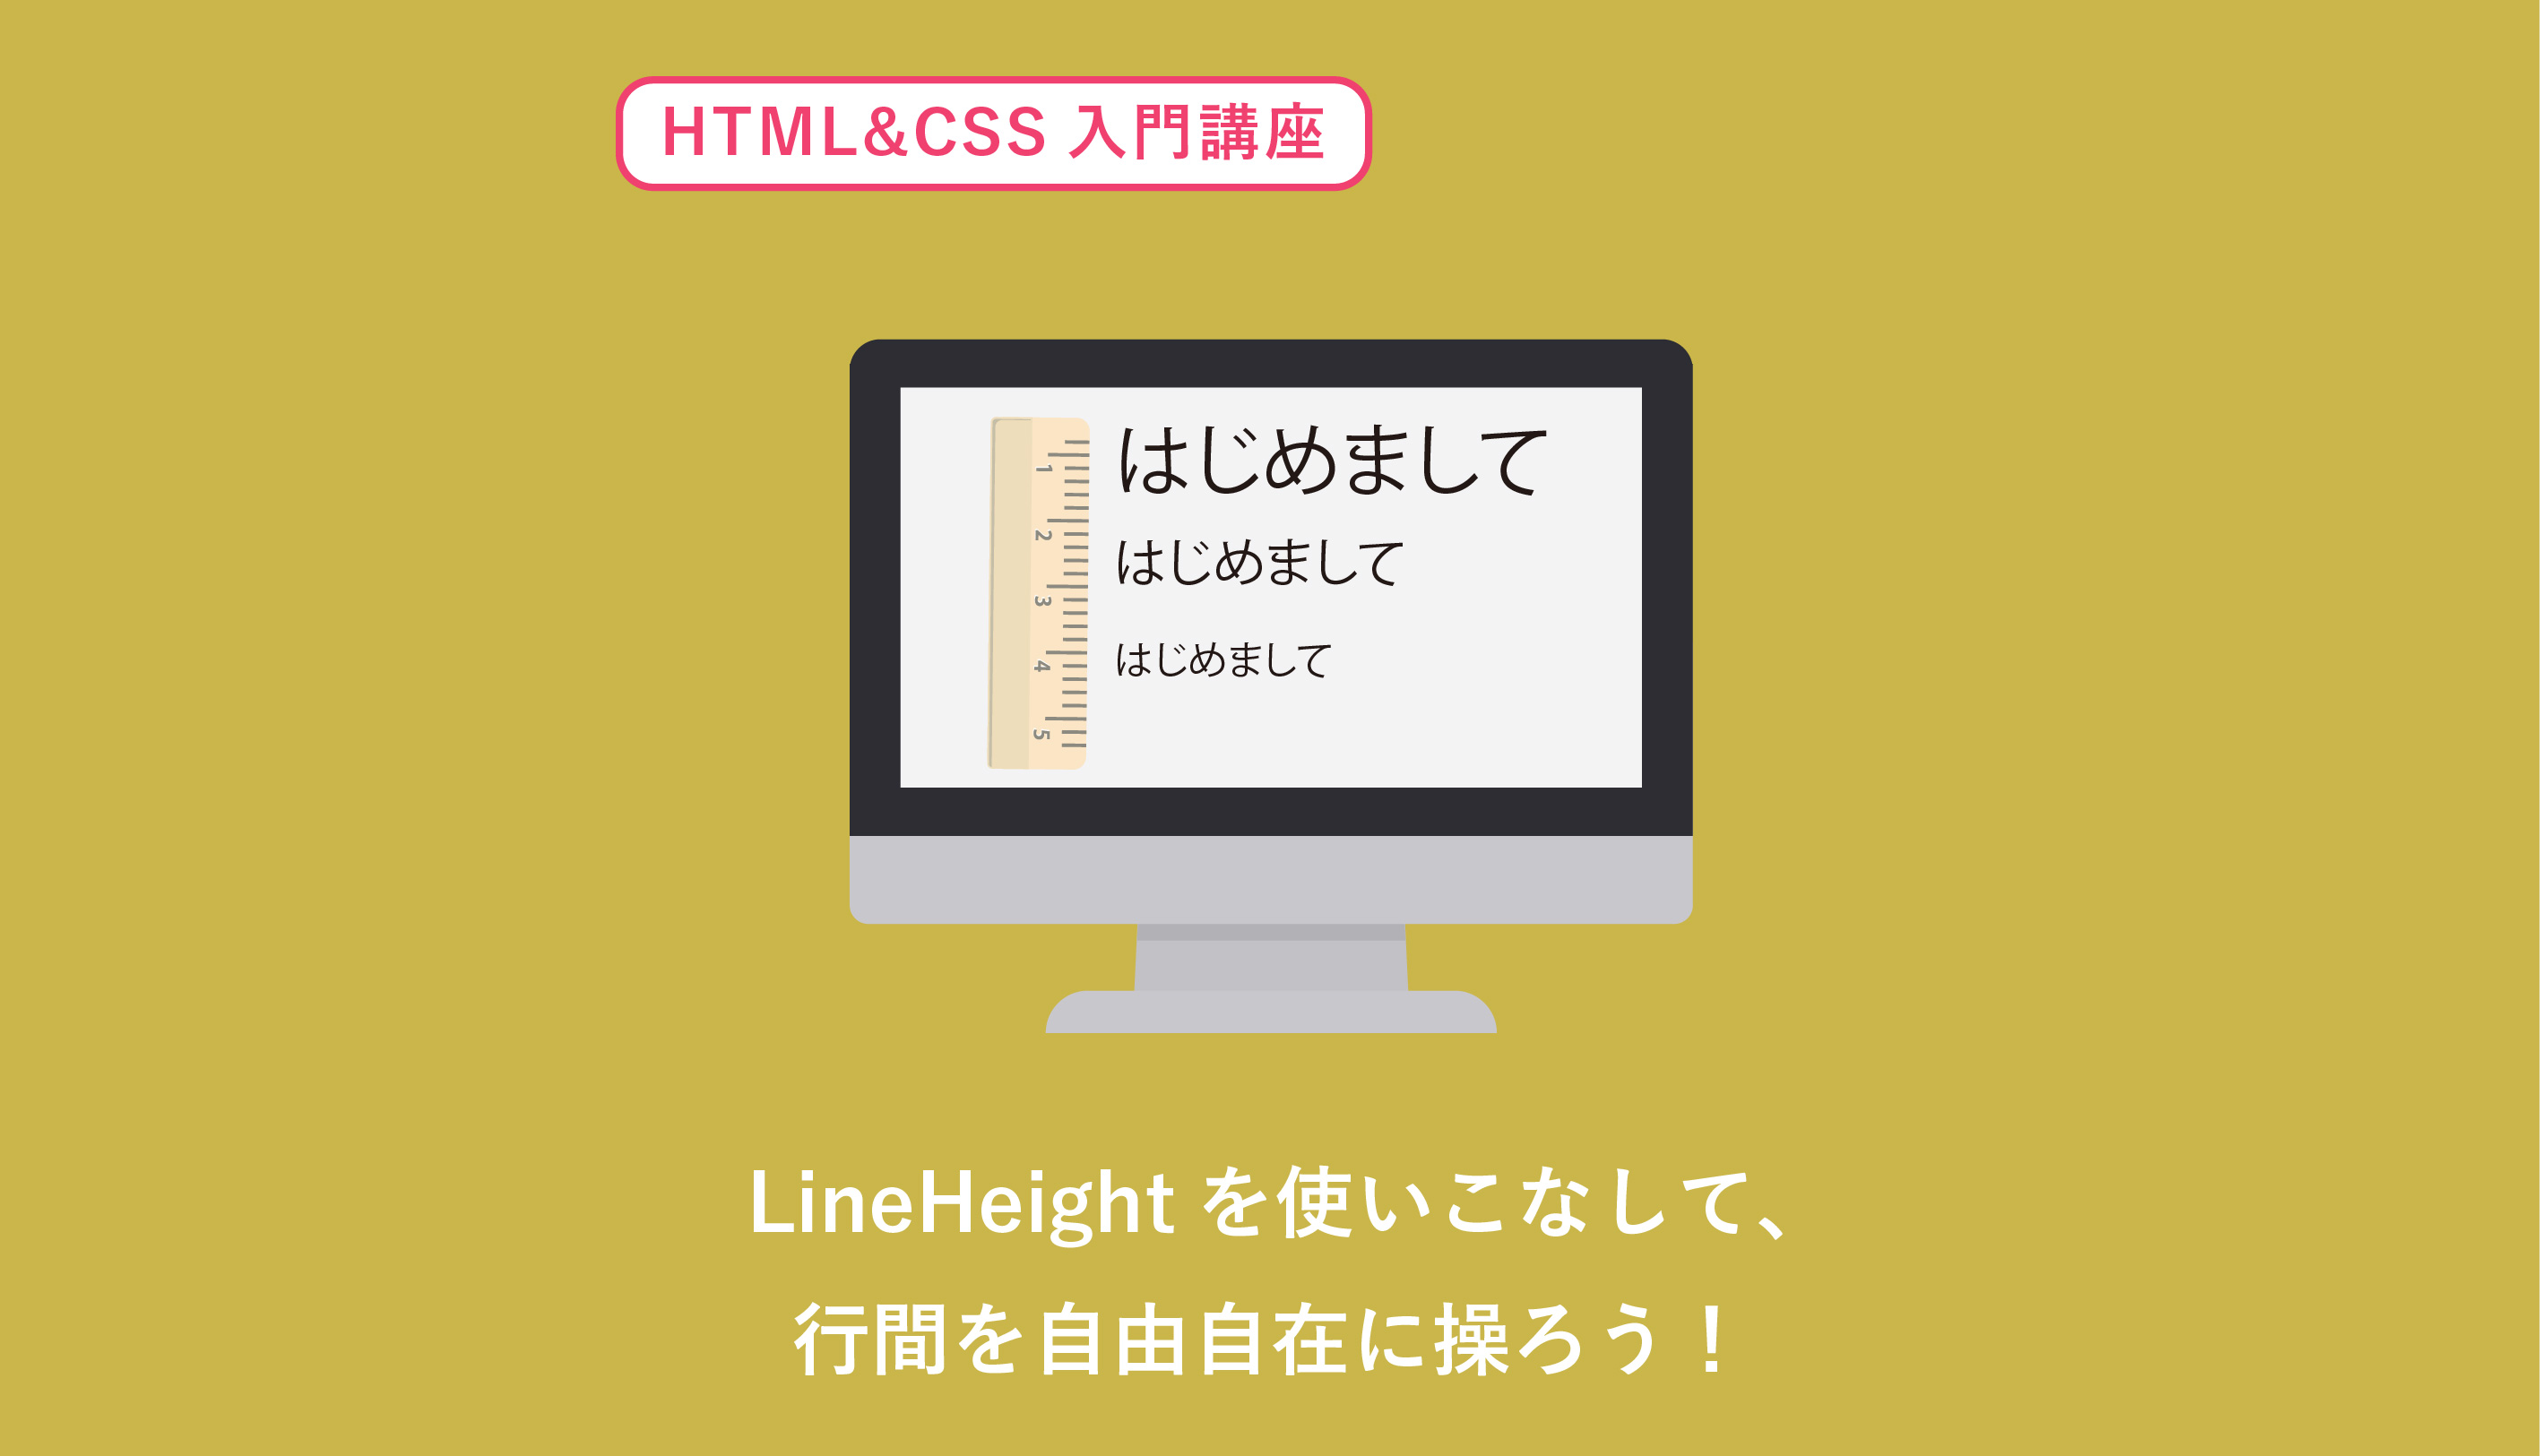 line-heightを使ったHTMLとCSSの行間指定をわかりやすく解説